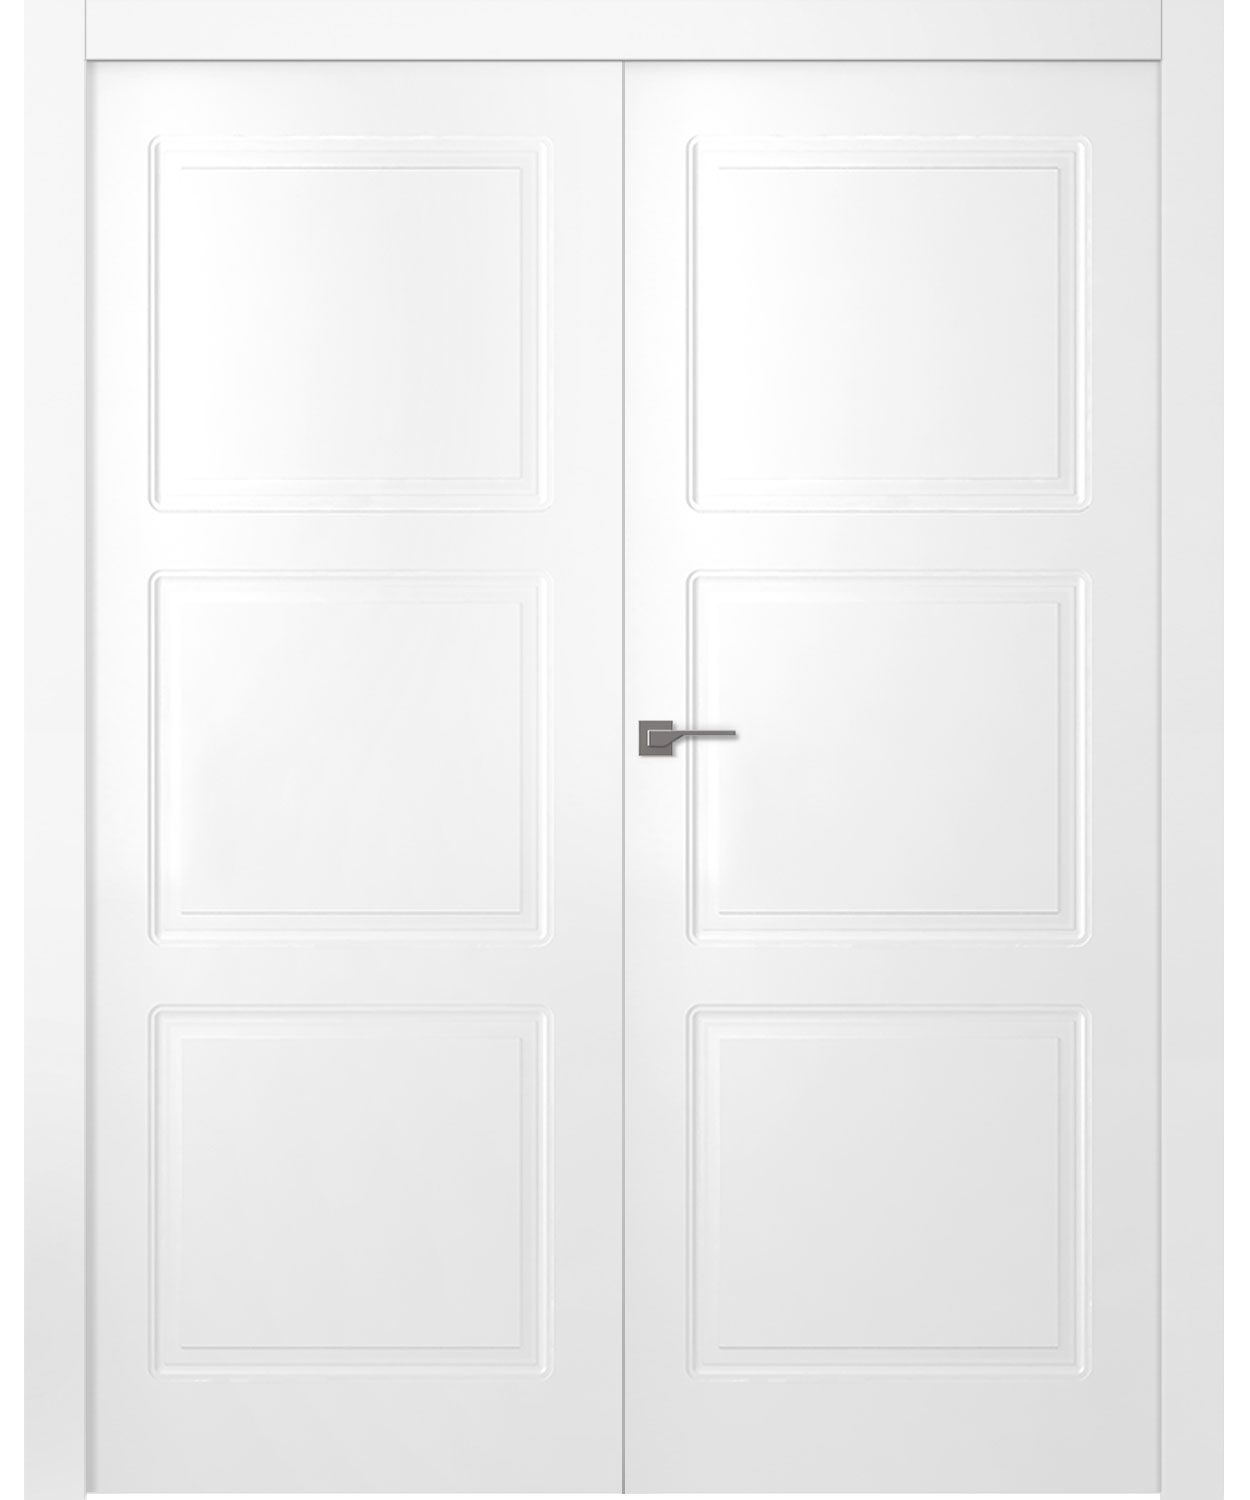 Дверное Полотно Пвдгщ "Granna" Эмаль Белый 2,0-0,7 Smart Core Распашная двойная